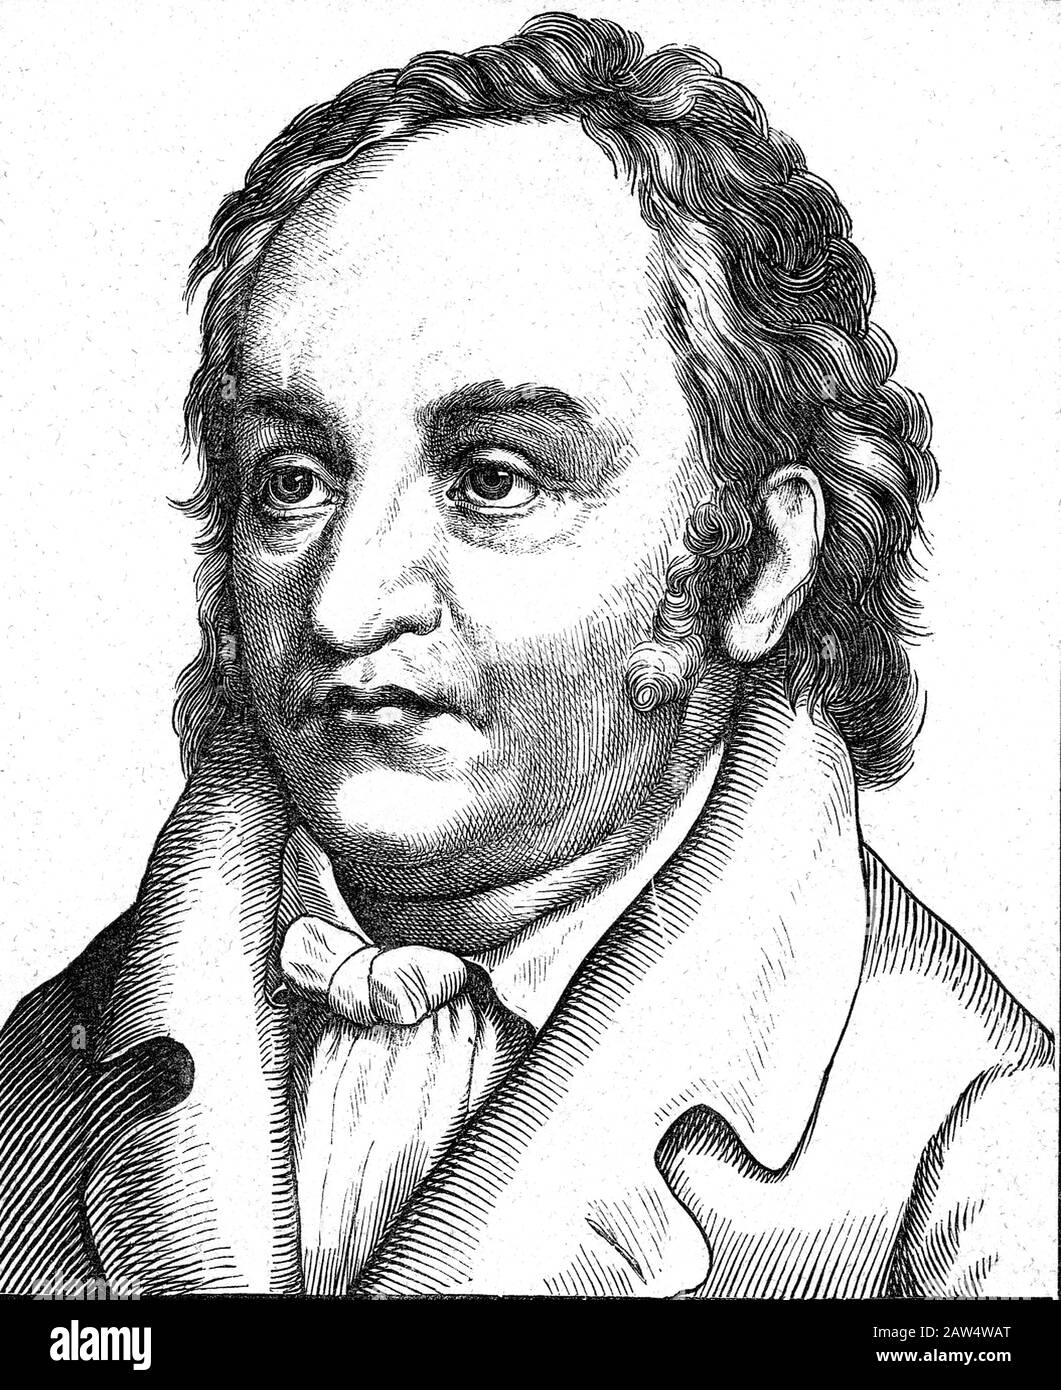 1810 Ca, DEUTSCHLAND: Der deutsche Romantiker und Pädagogik Johann Paul Friedrich Richter alias Jean Paul (* um 173-1825), eingraviert im Porträt Stockfoto